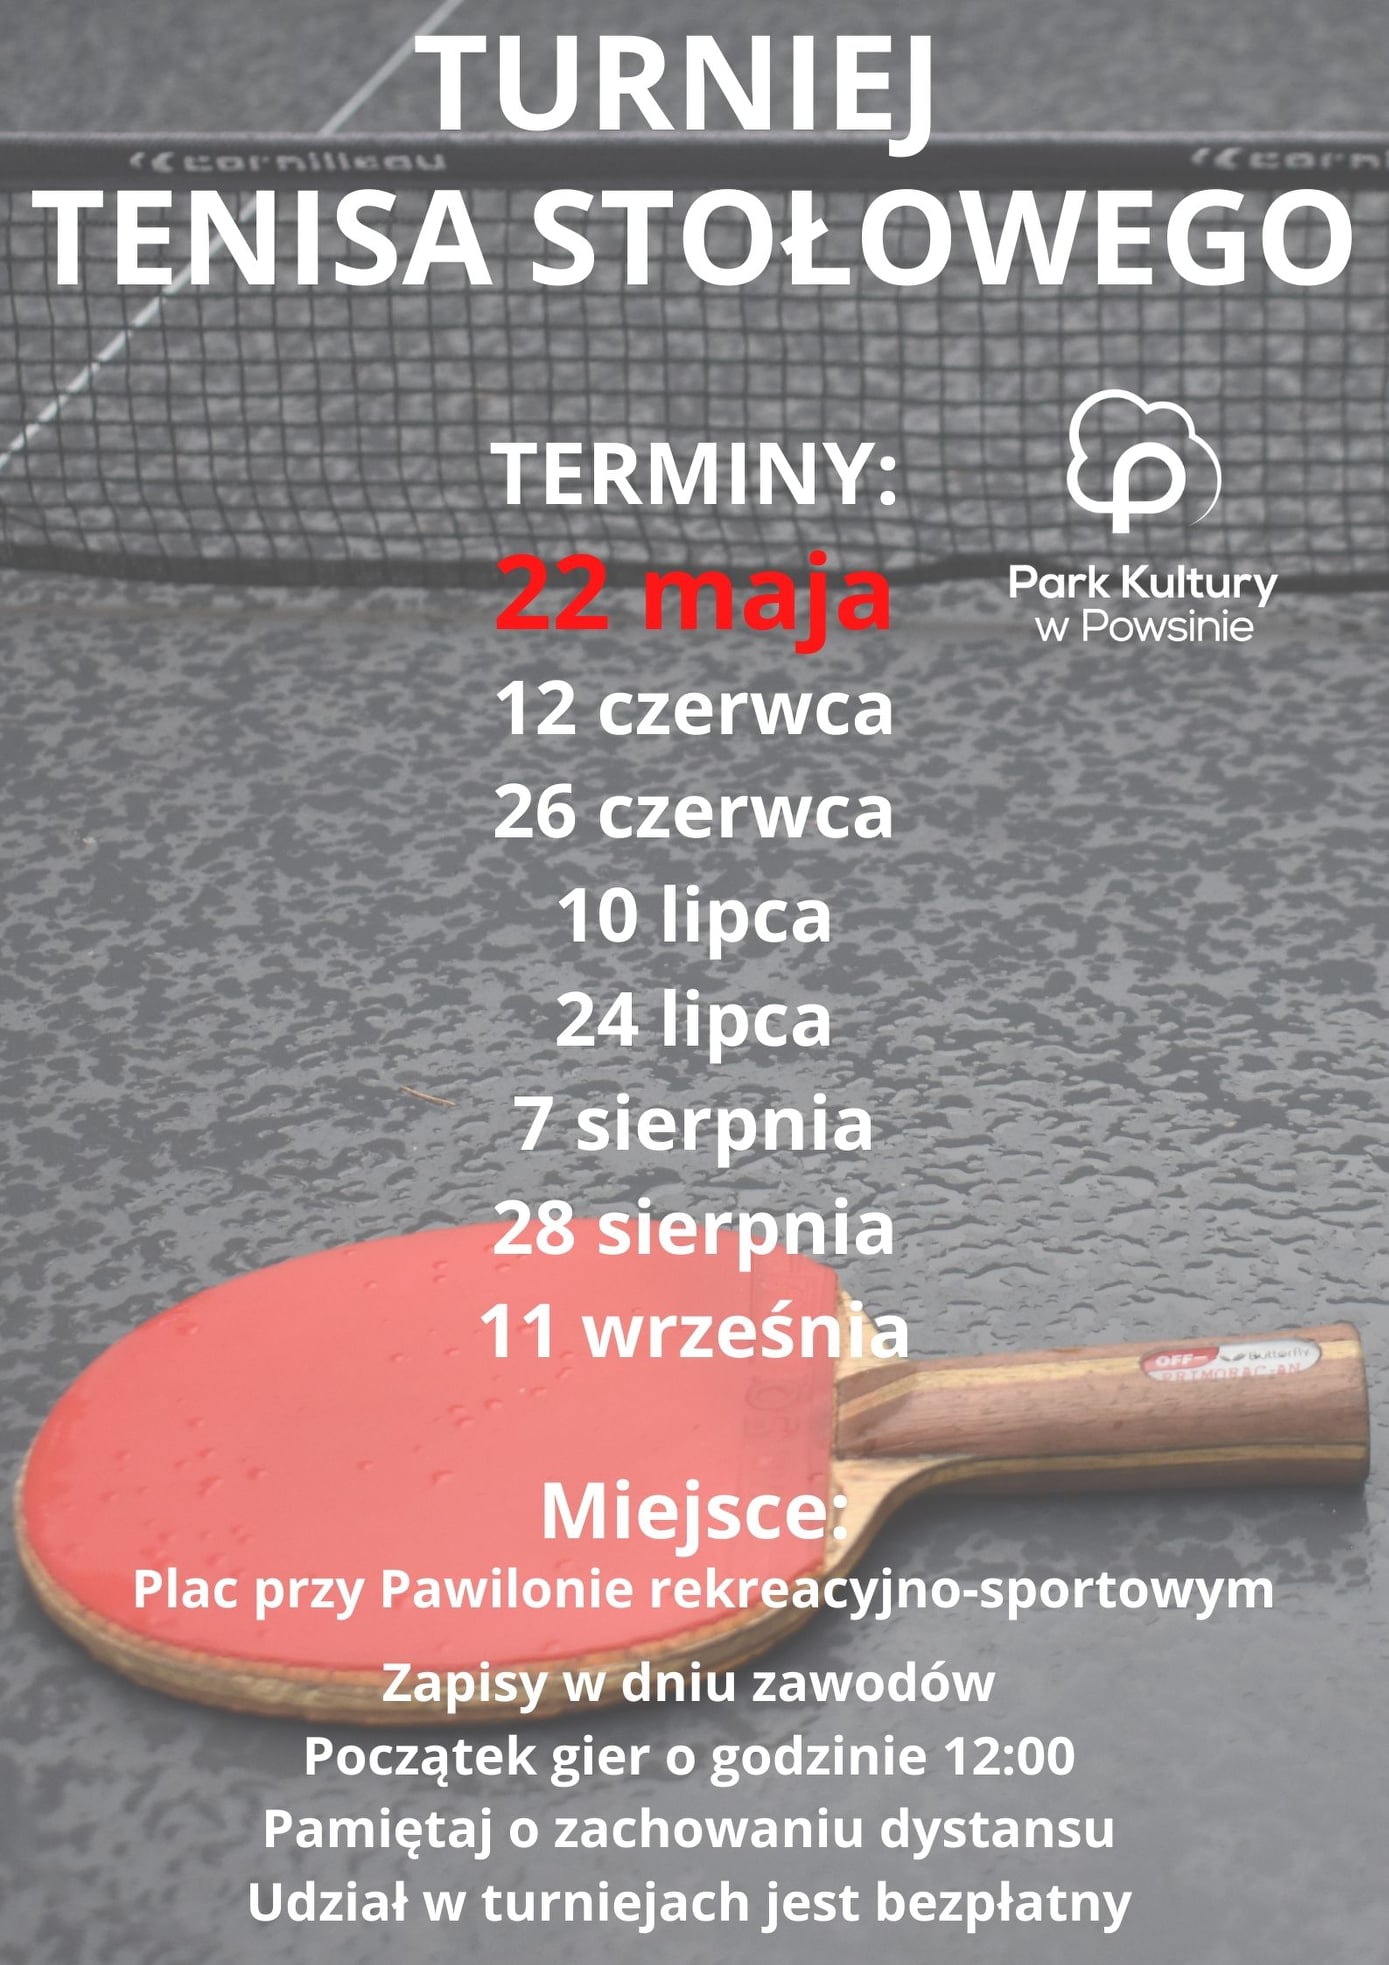 Plakat turnieju Cykl turniejów w tenisie stołowym w Parku Kultury w Powsinie 2021 - 2 termin